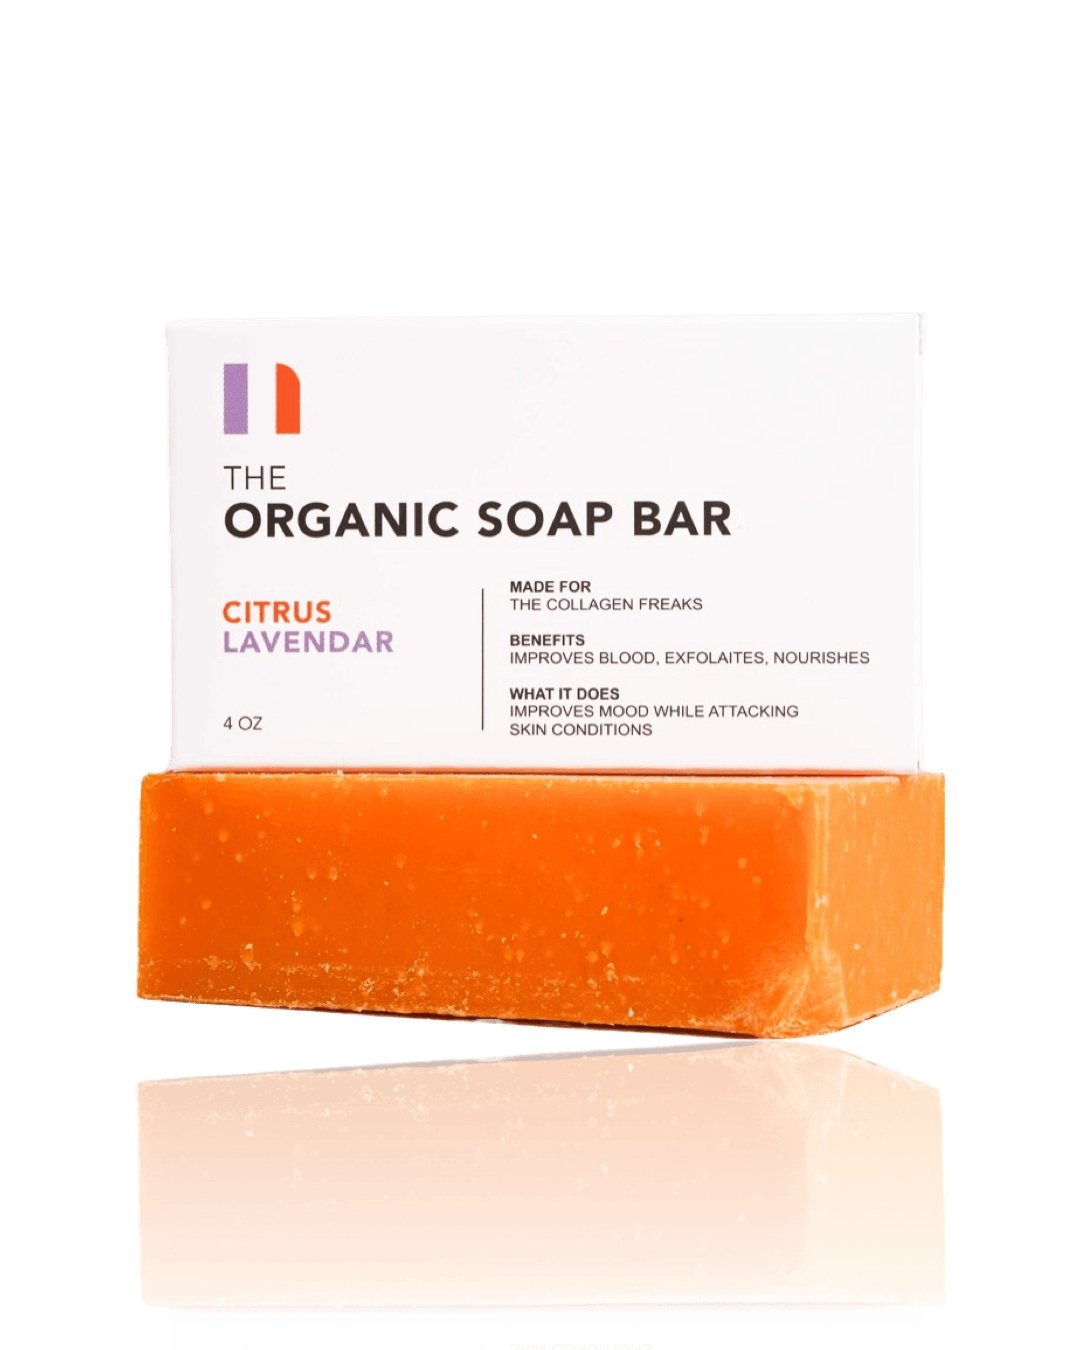 Organic Citrus Lavendar Soap Bar - Noun Naturals Habibi Oil - Habibi Life - Noun Beard Oil -Habibi Oil - Hair Growth Oil